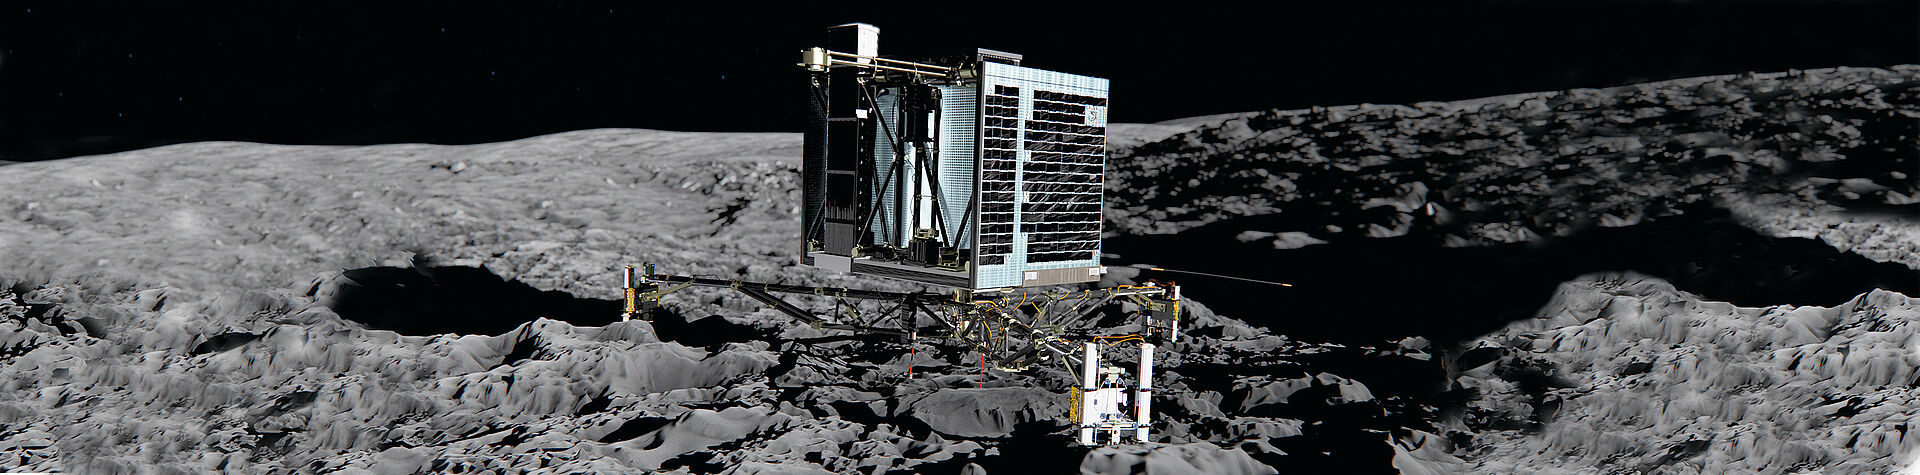 Antriebssysteme für Raumfahrt Rosetta Mission Header